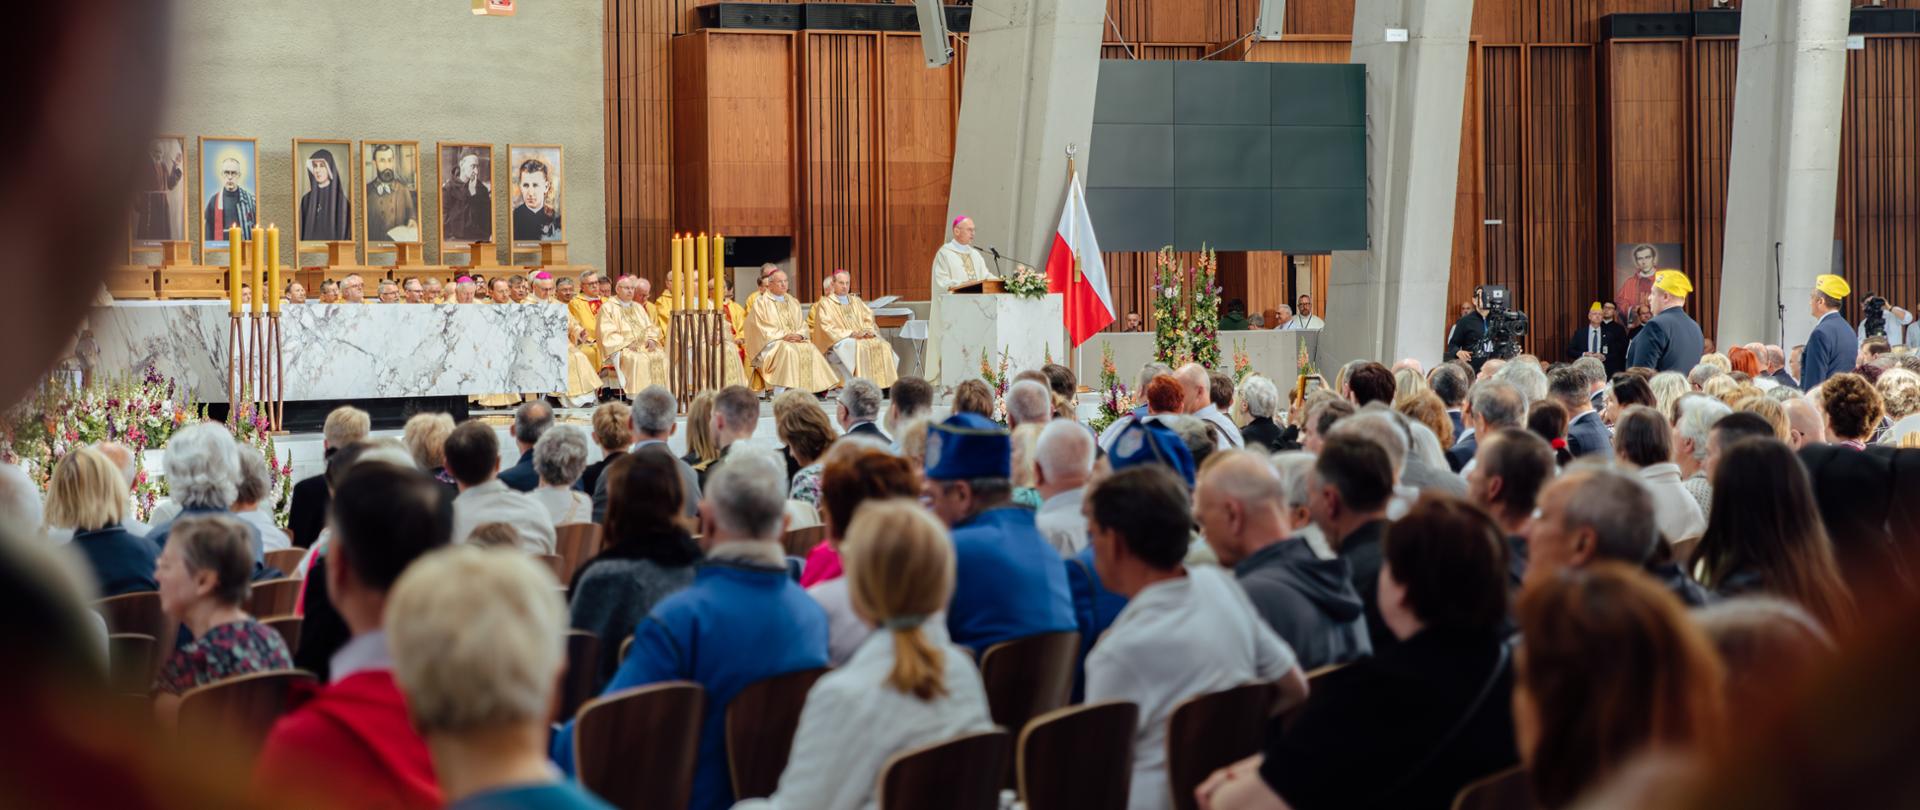 Eucharystia w ramach XVI Święta Dziękczynienia w Świątyni Opatrzności Bożej w Warszawie.